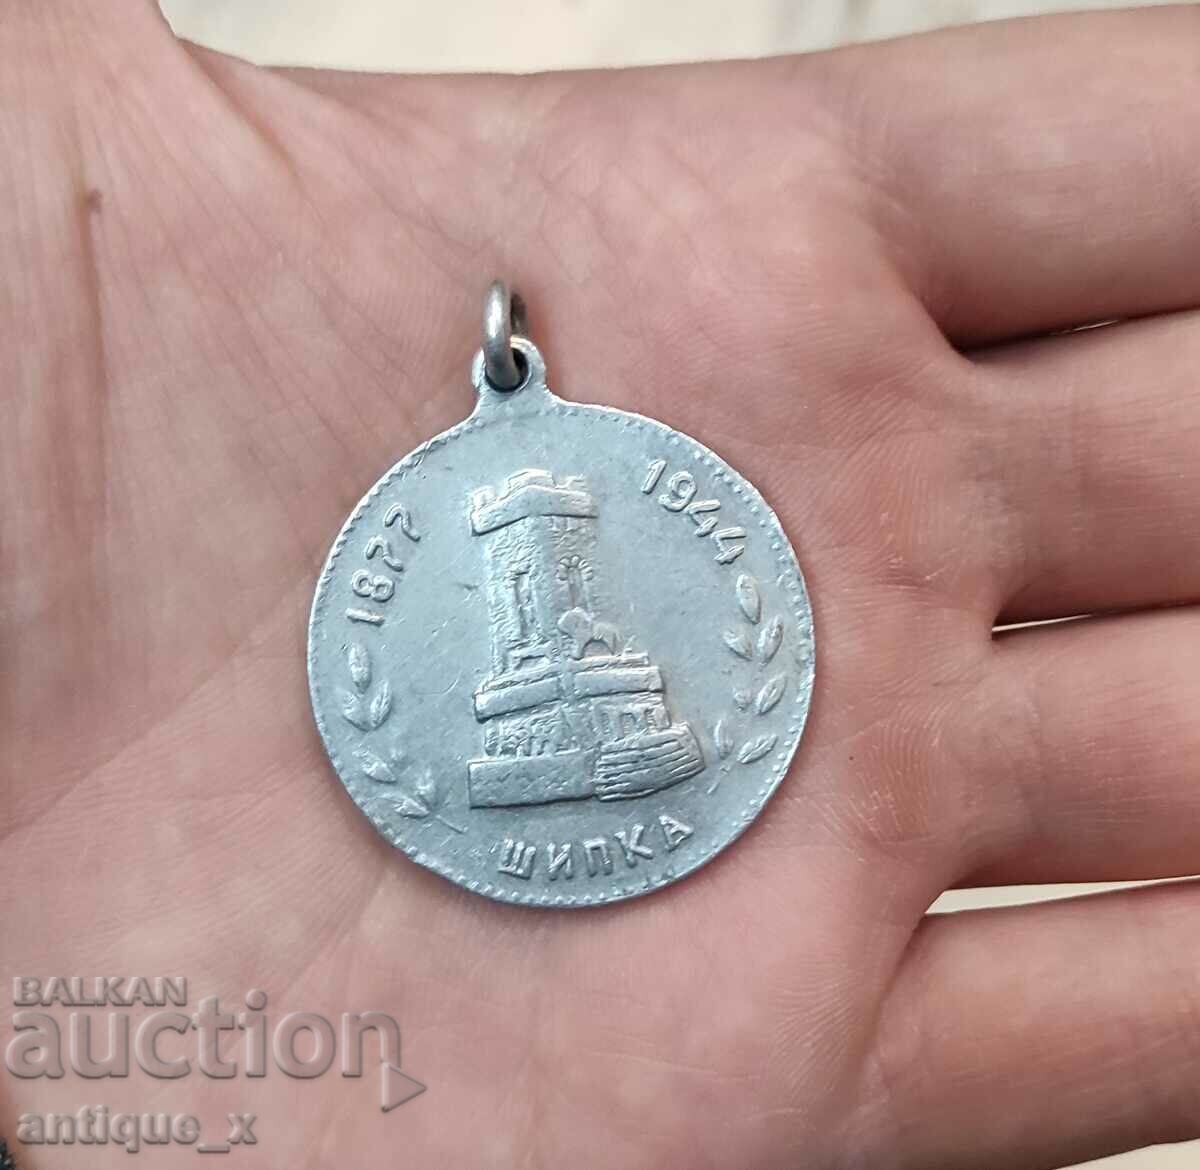 Bulgarian royal aluminum medal - Shipka - 1877-1944